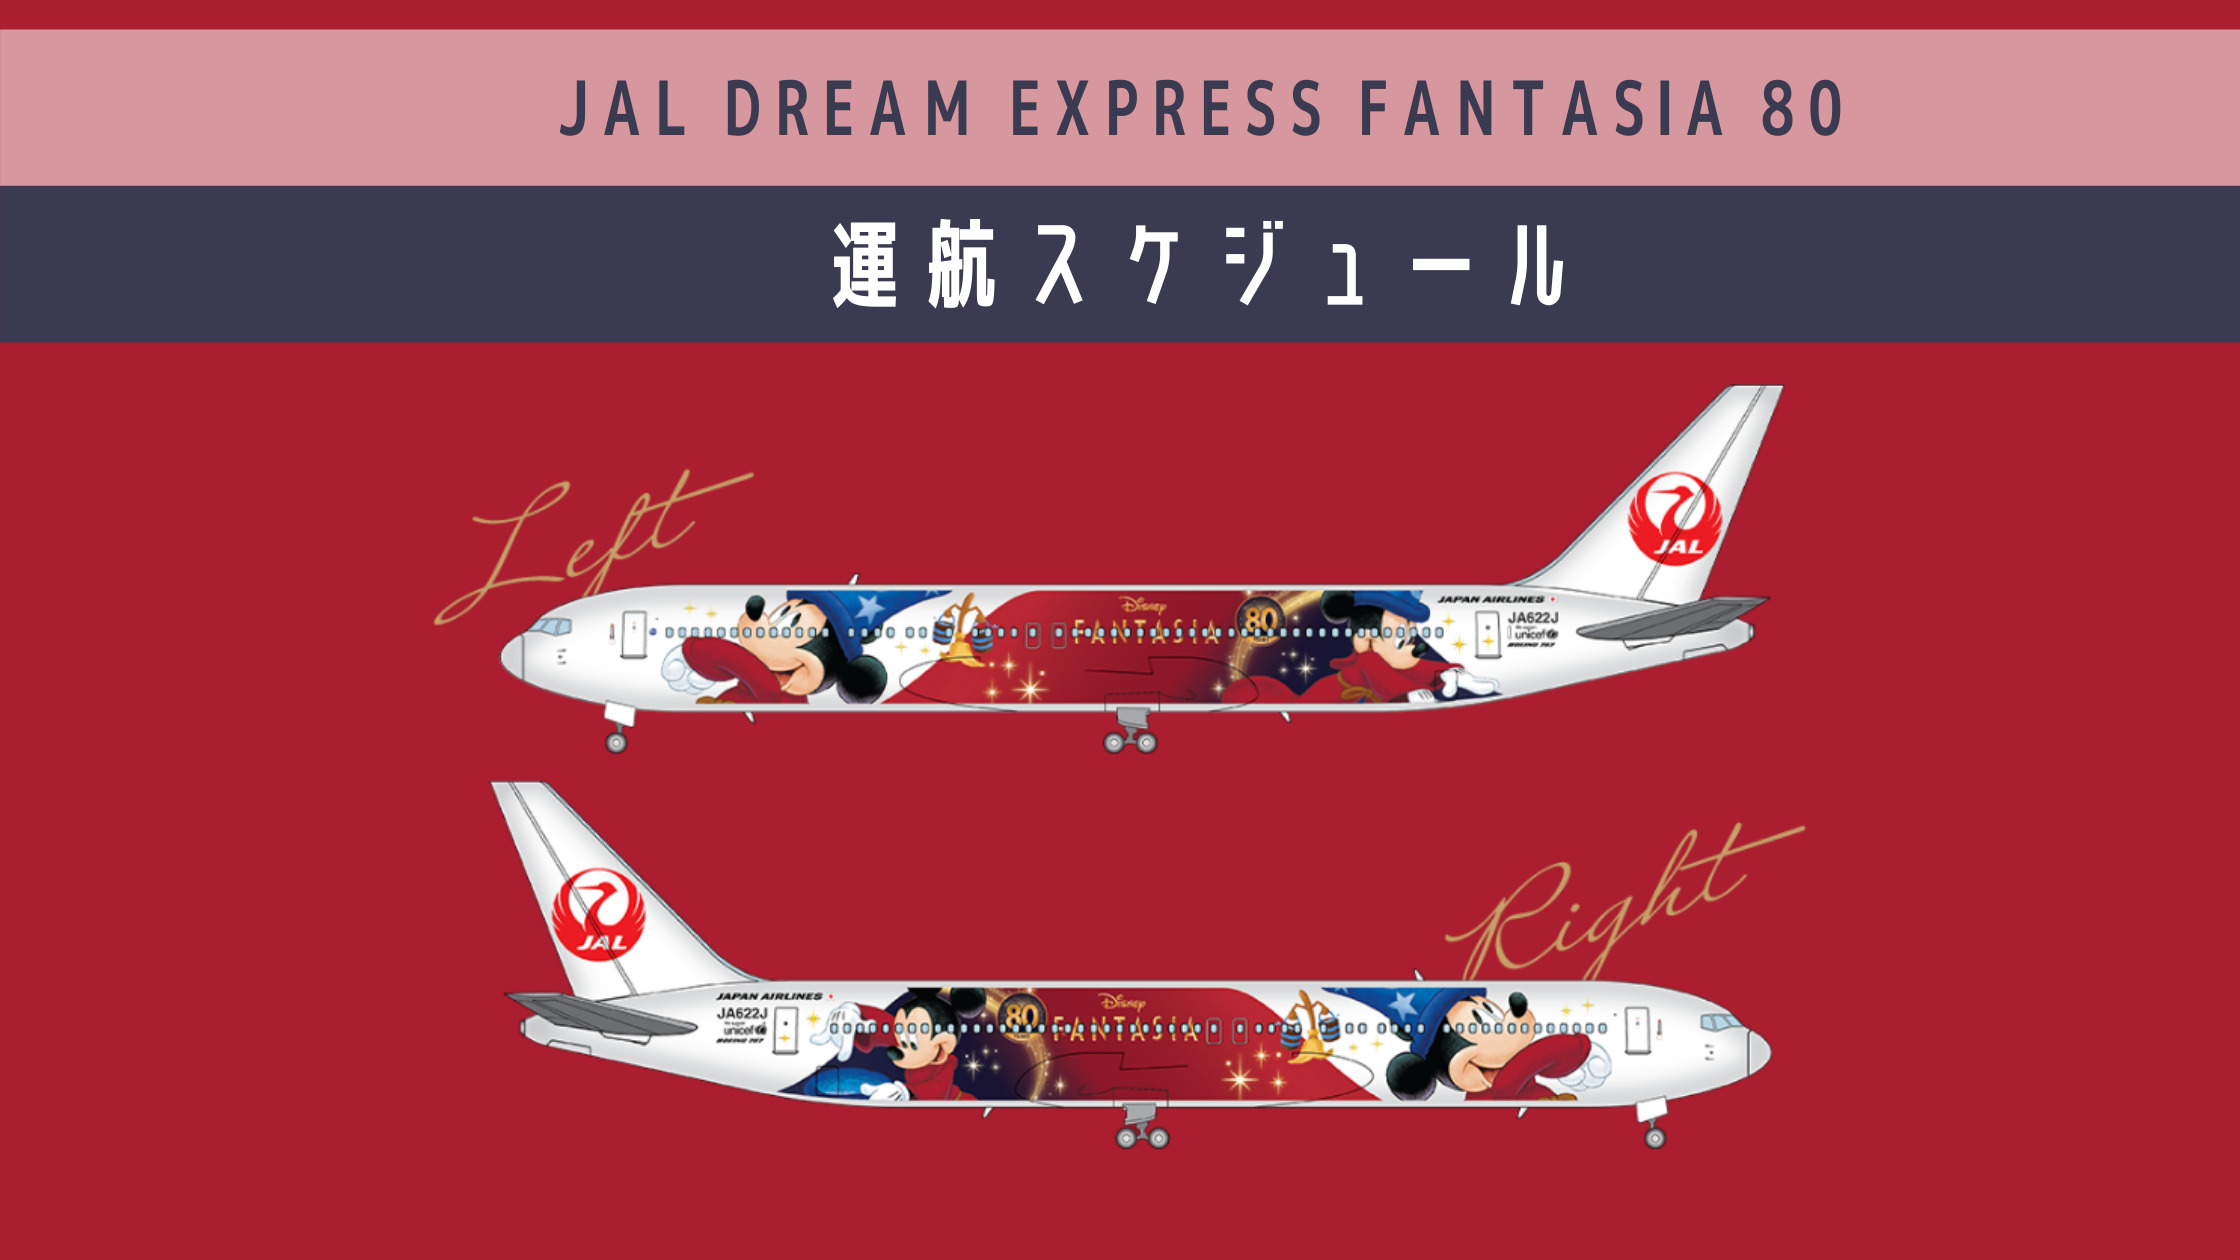 フライトスケジュール毎日更新 ディズニー ファンタジア 公開80周年記念 Jal Dream Express Fantasia 80 運航開始 シテイリョウコウ